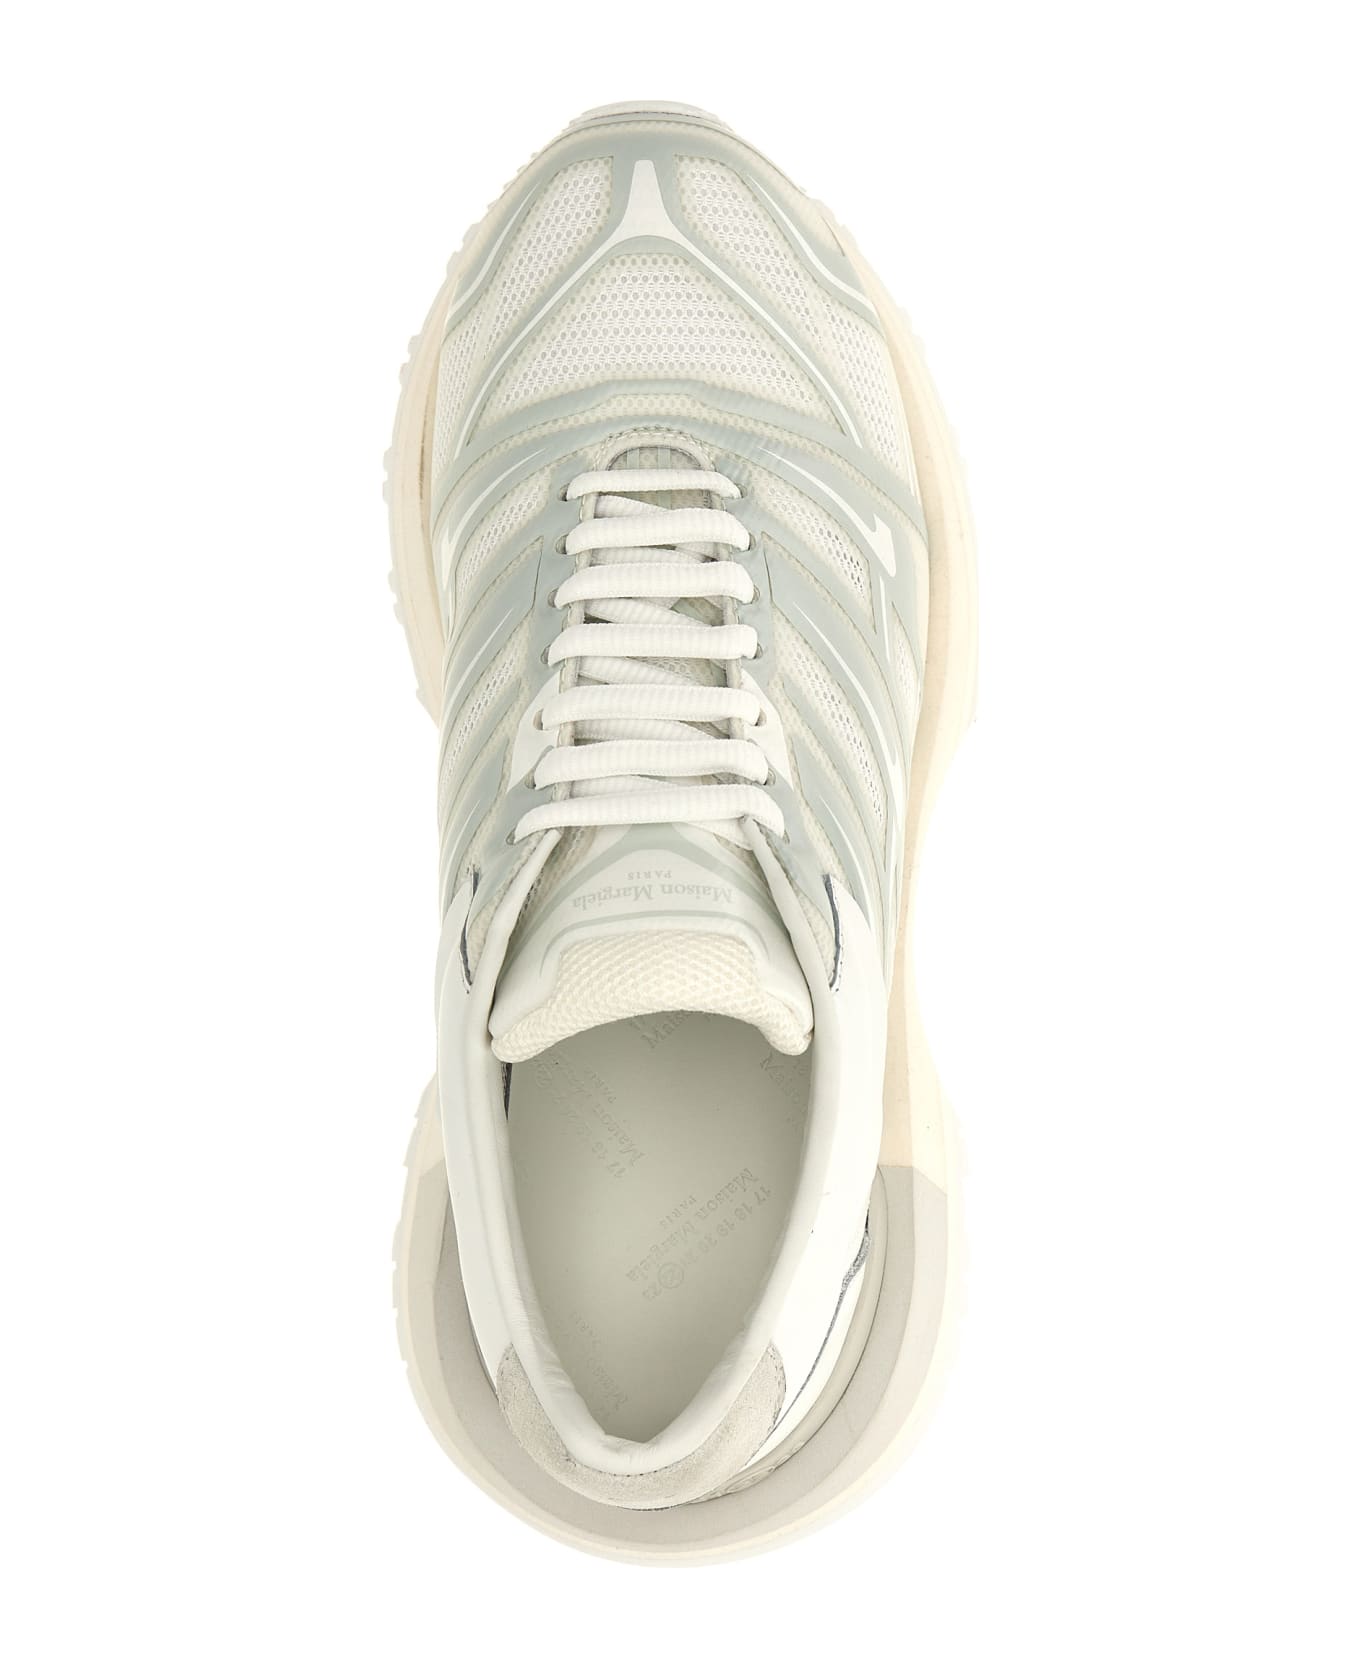 Maison Margiela '50/50' Sneakers - White